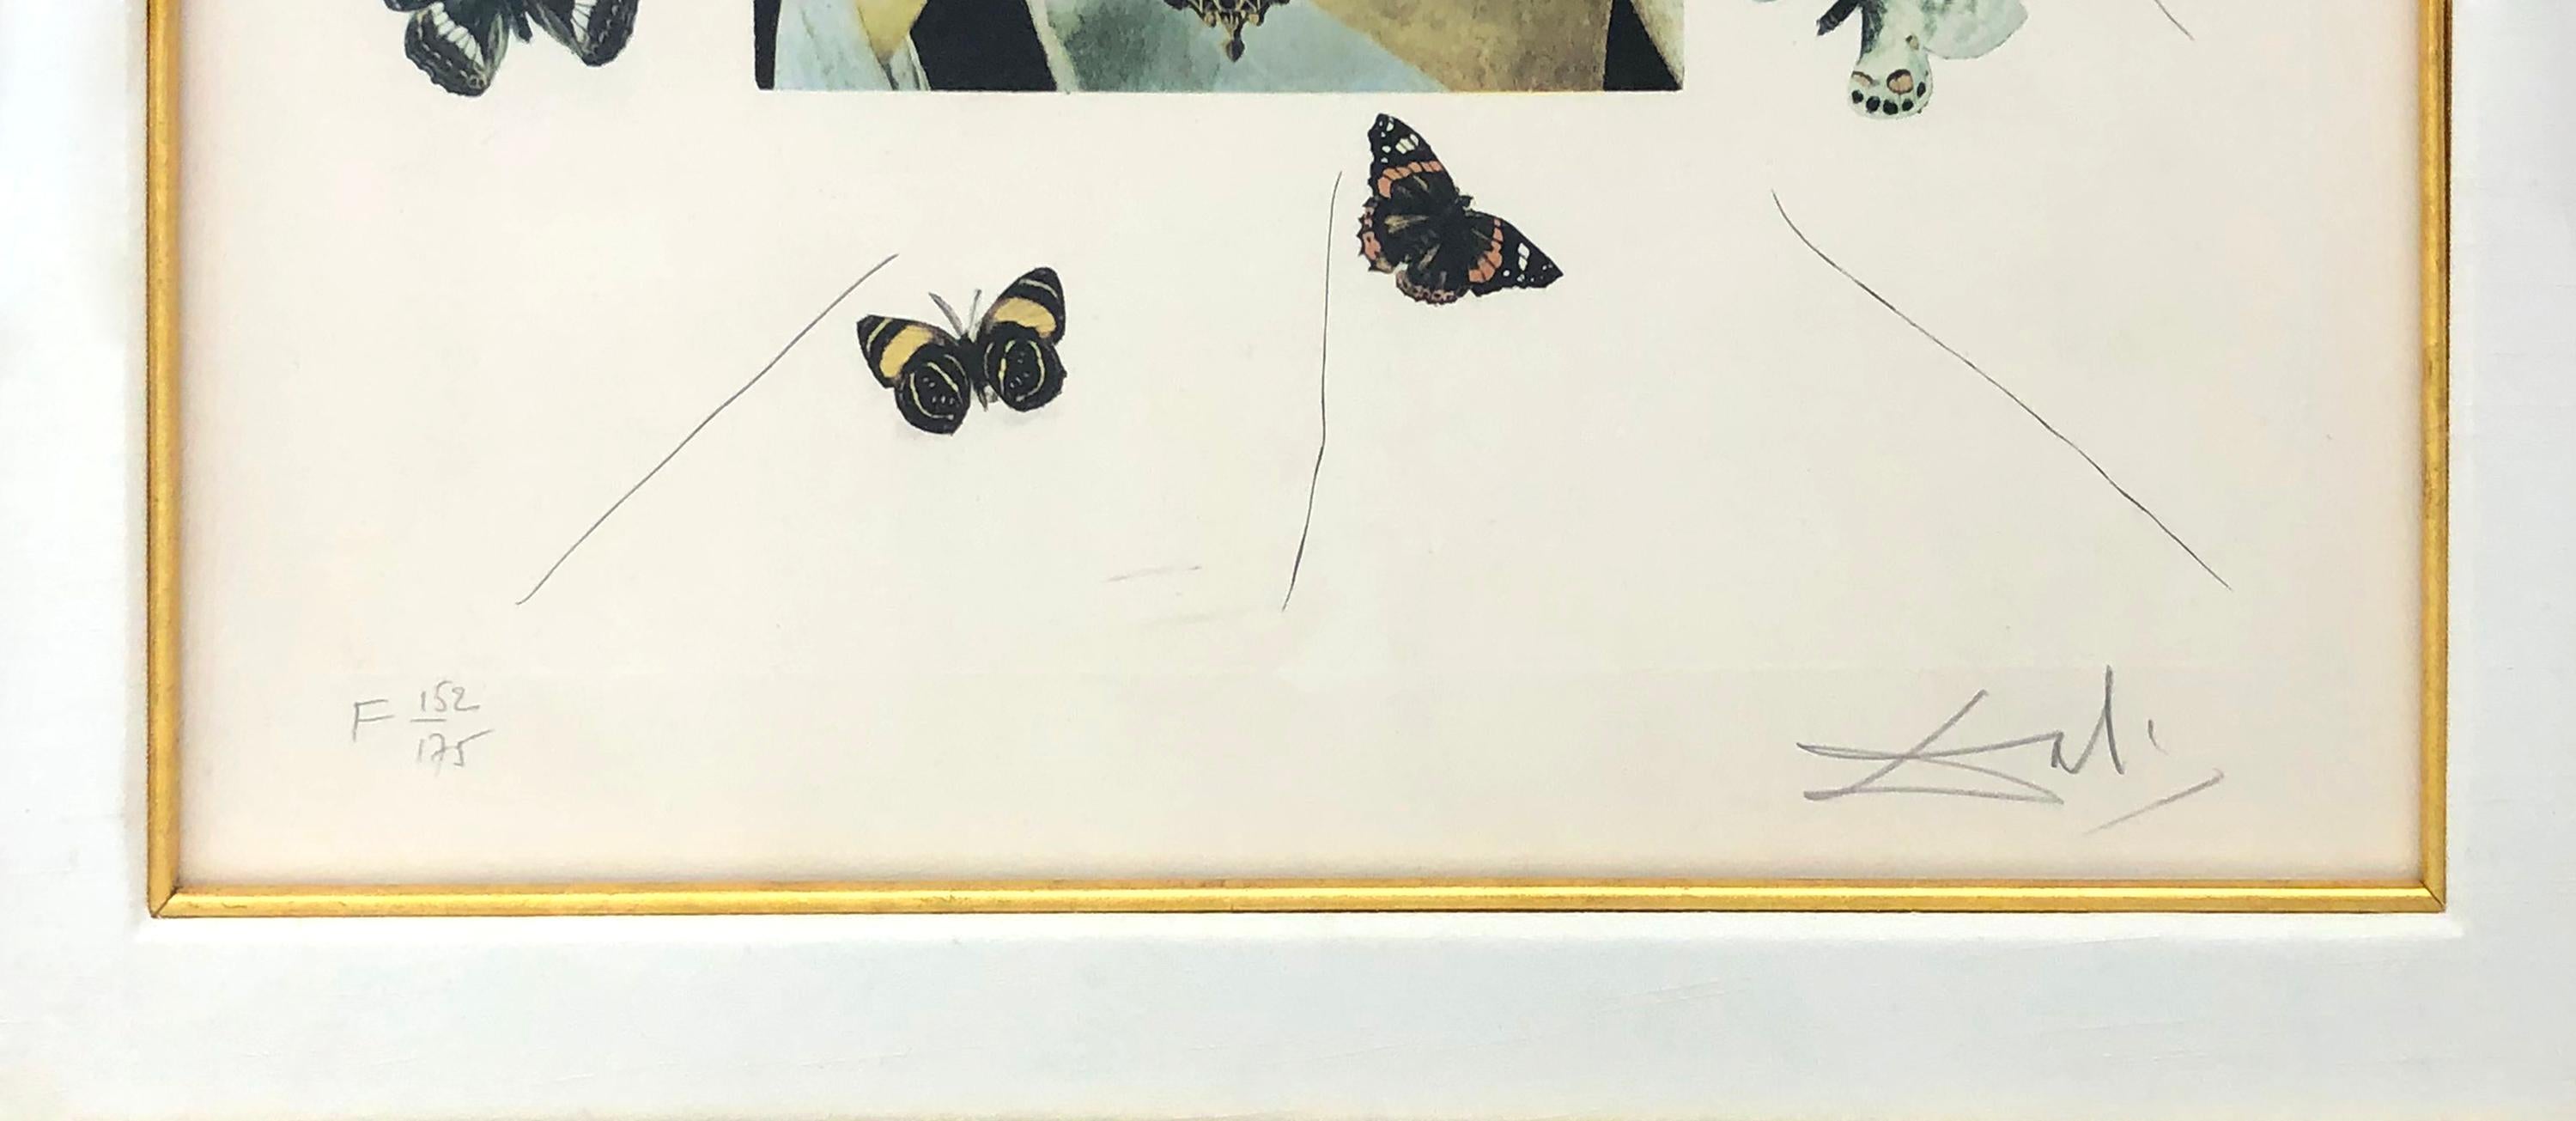 PORTRAITiste DALI RÉALISÉE PAR BUTTERFLIES - Print de Salvador Dalí